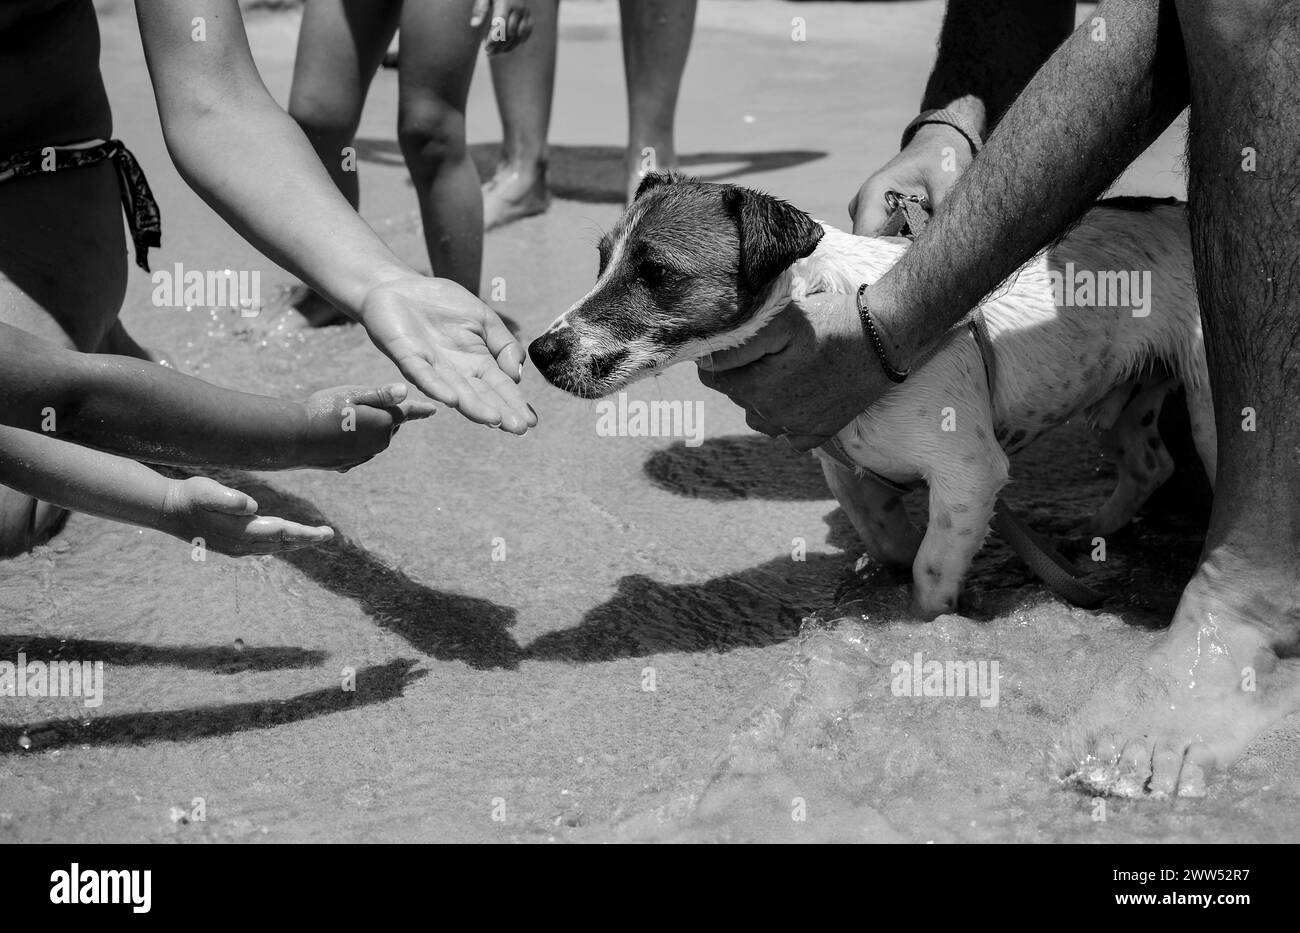 Les mains attentionnées procurent un confort à un chien trempé sur une plage animée, mettant en valeur un moment tendre de connexion homme-animal - Jack Russell sur une mer animée Banque D'Images